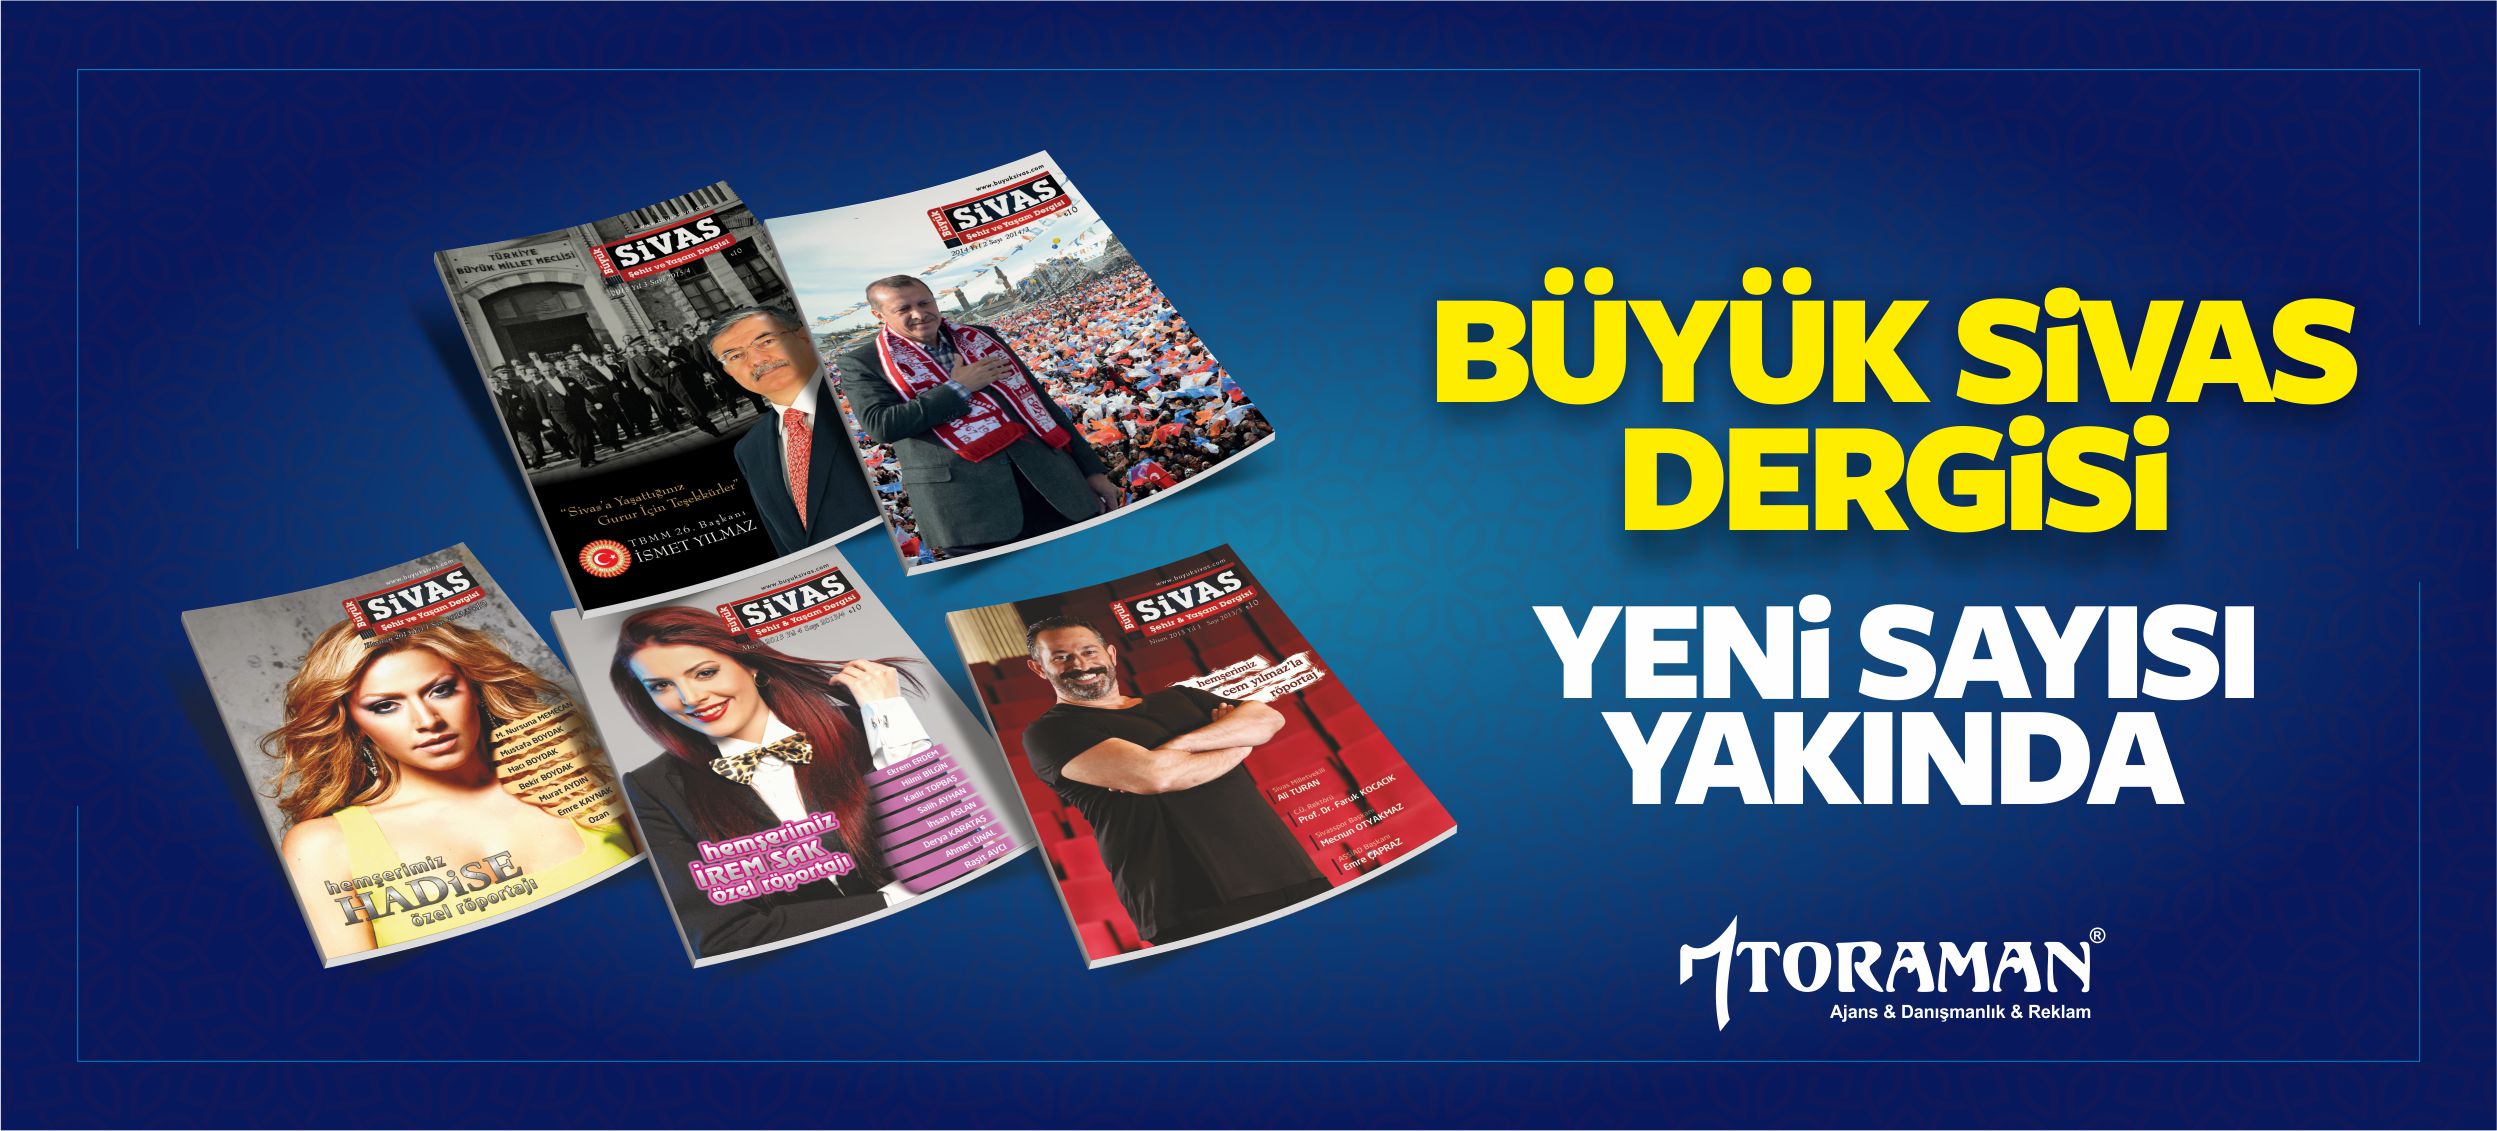 Büyük Sivas Dergisi Yeni Sayısı Çıkıyor